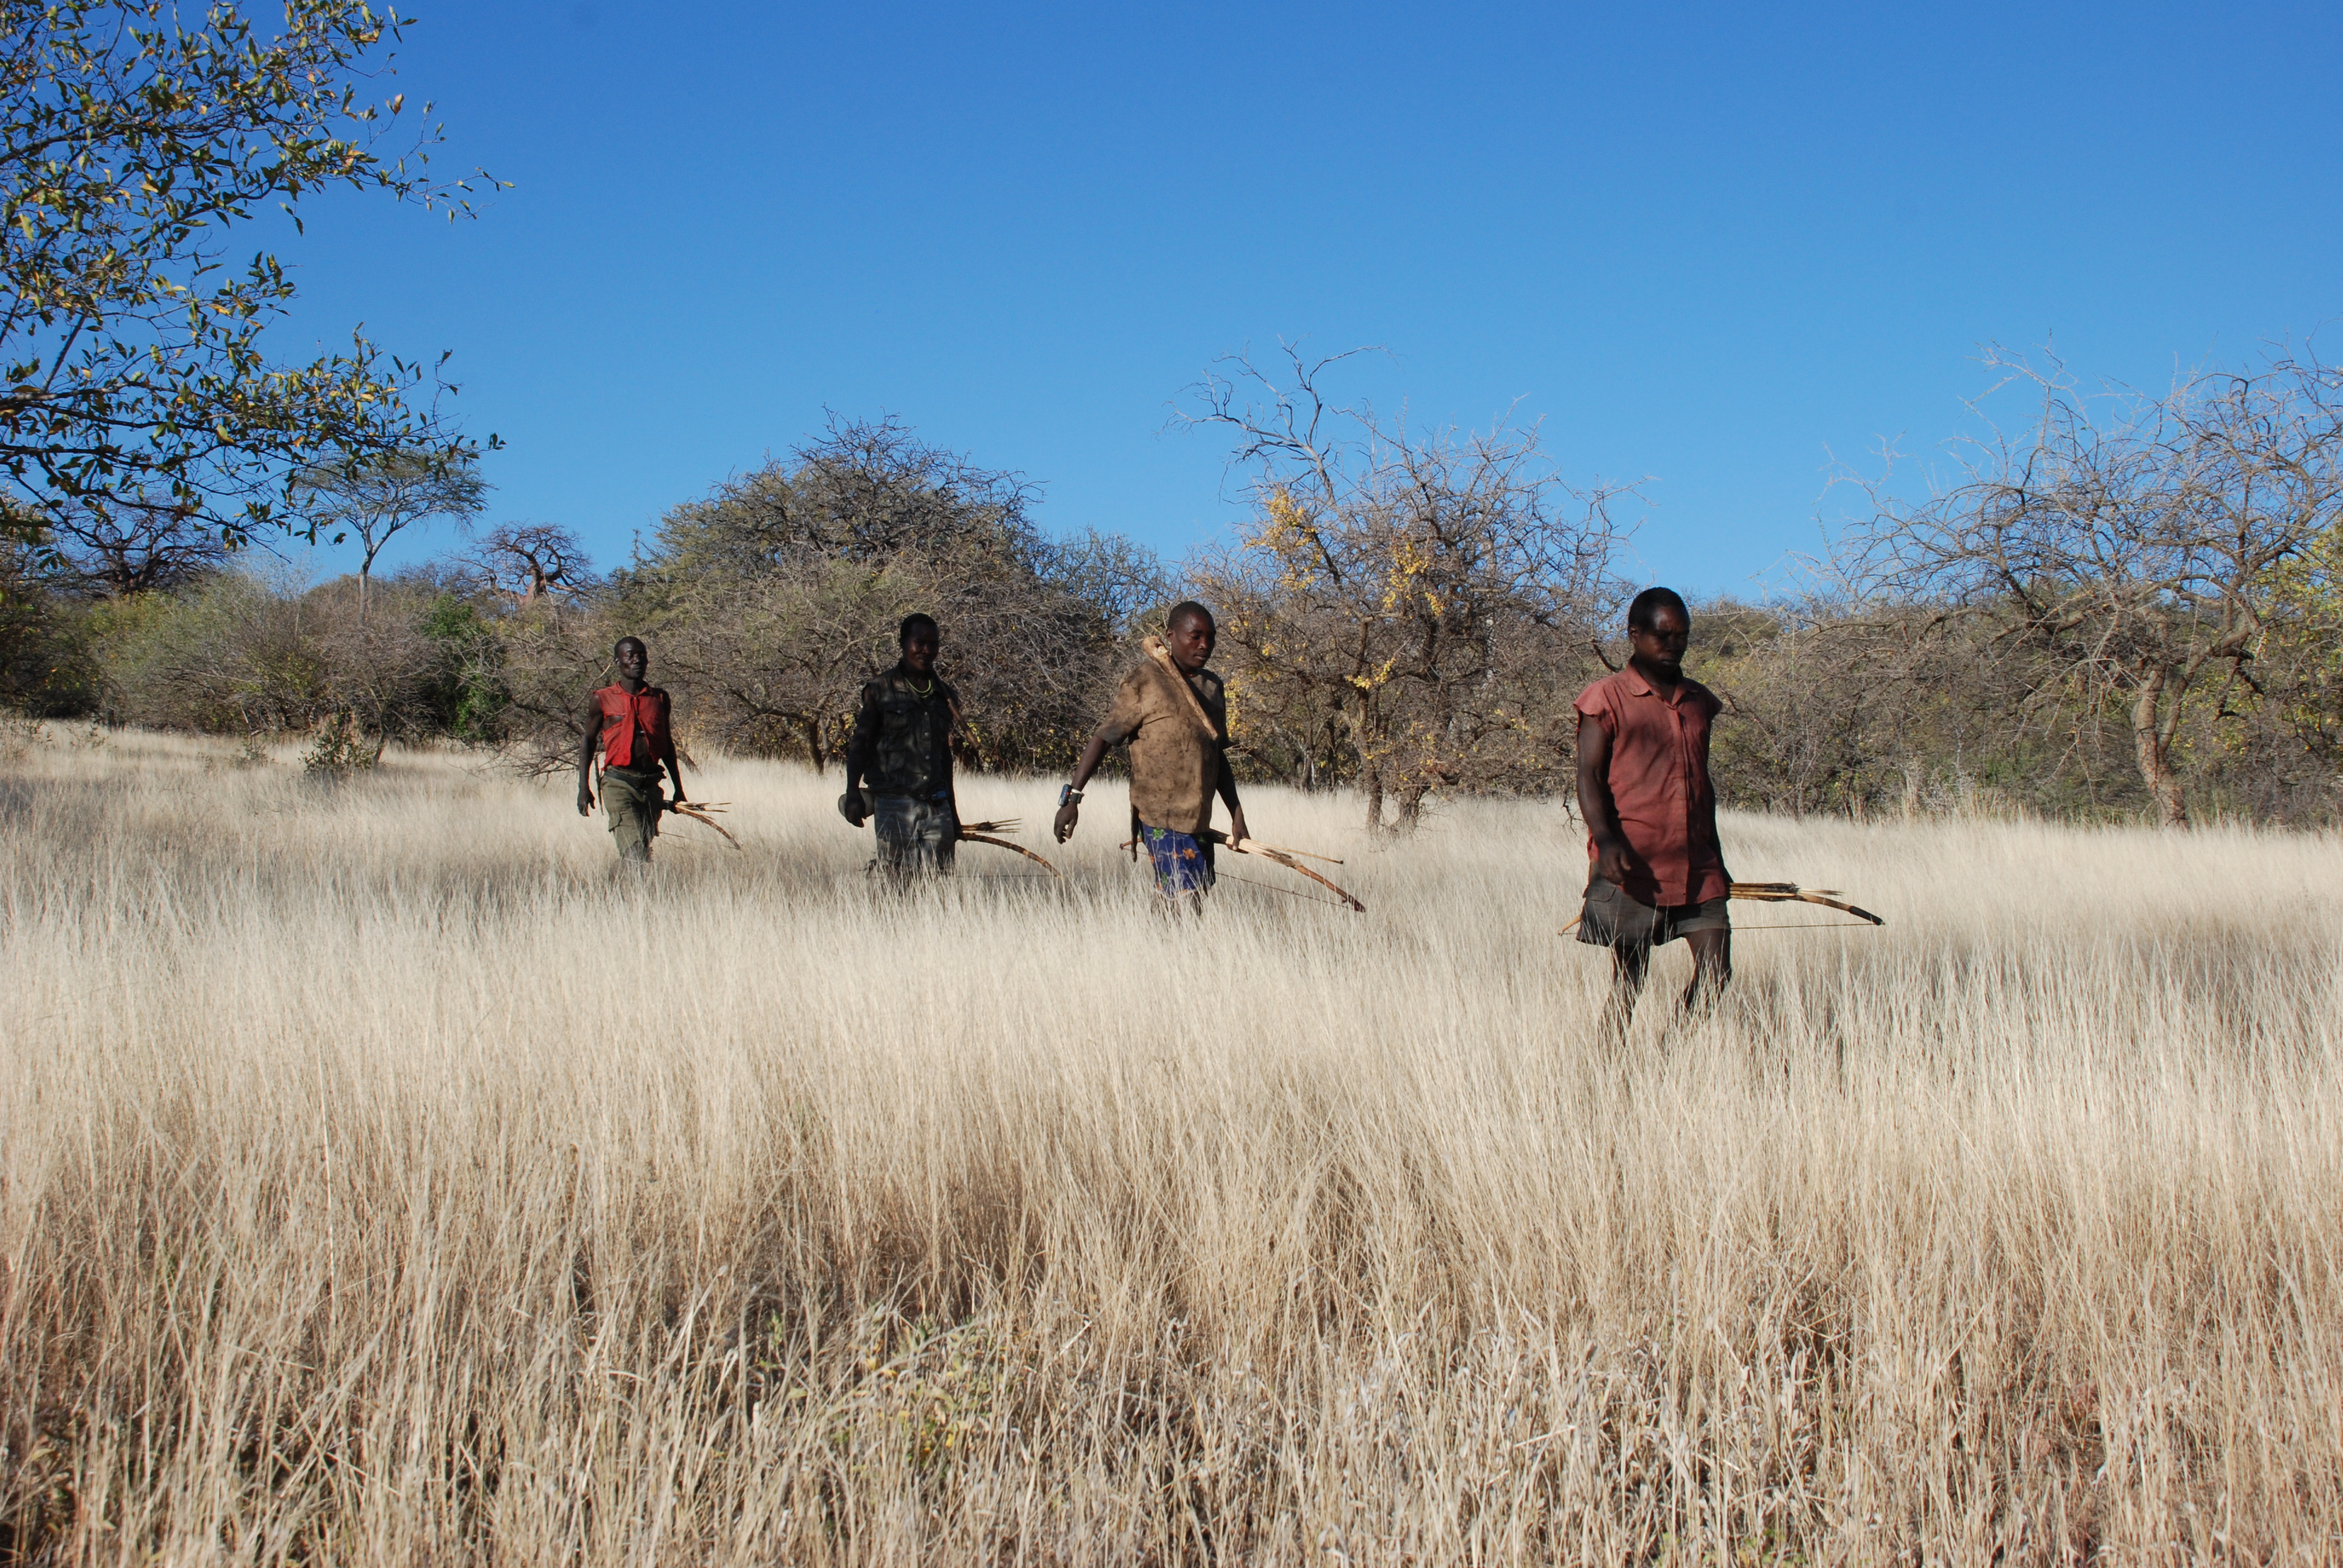 Les Hadzas de Tanzanie ont porté des bracelets GPS qui ont permis à des anthropologues d’étudier leurs mouvements pendant la chasse ou la recherche de nourriture. © Brian Wood, Yale University